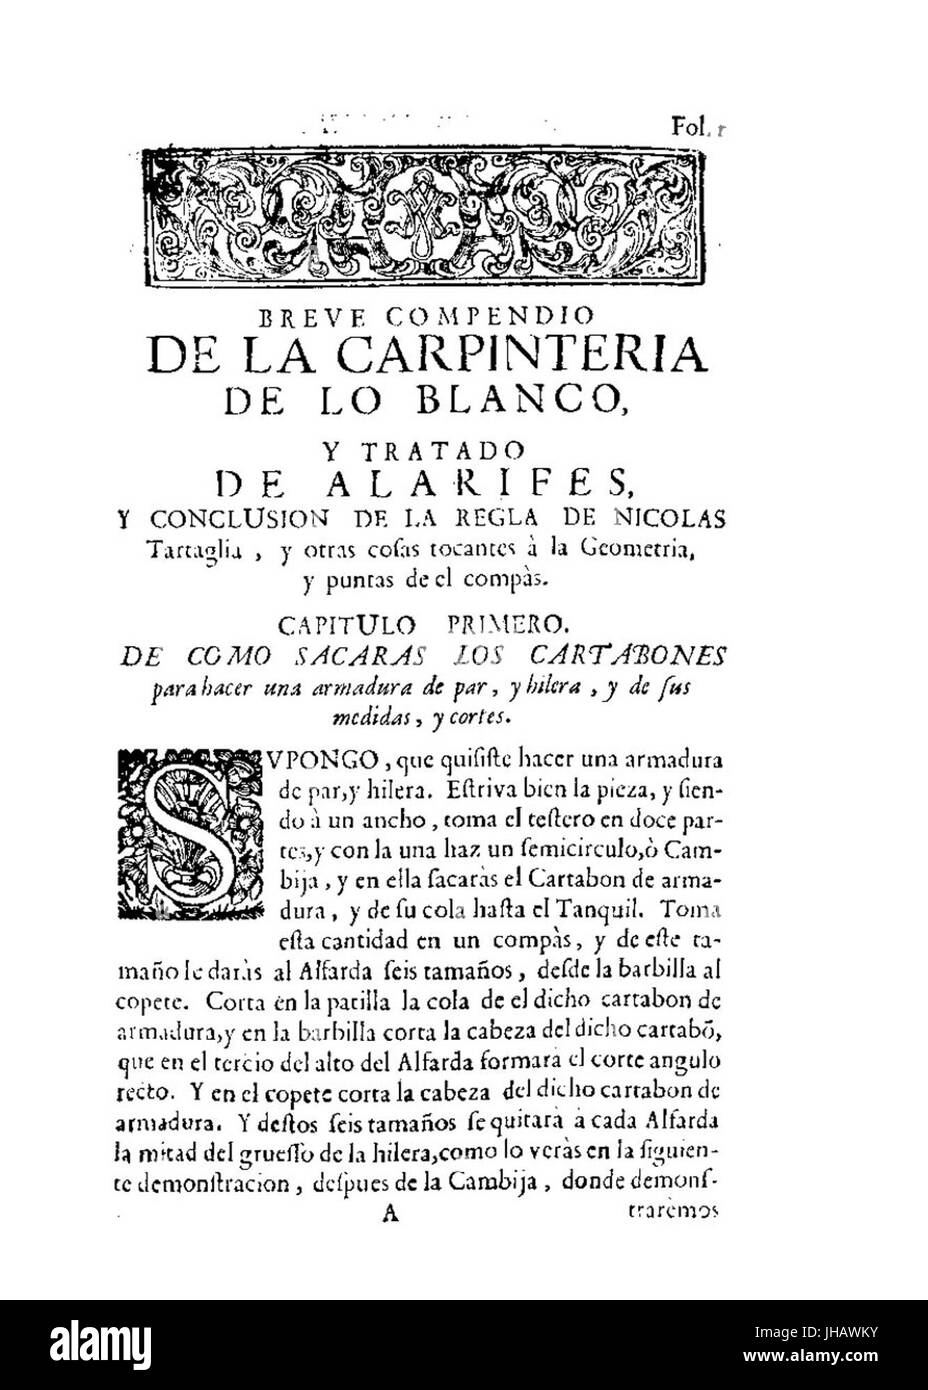 Lopez de Arenas - Breve Compendio De La Carpinteria de lo Blanco y Tratado de Alfaros, 1727-1427289 Stockfoto